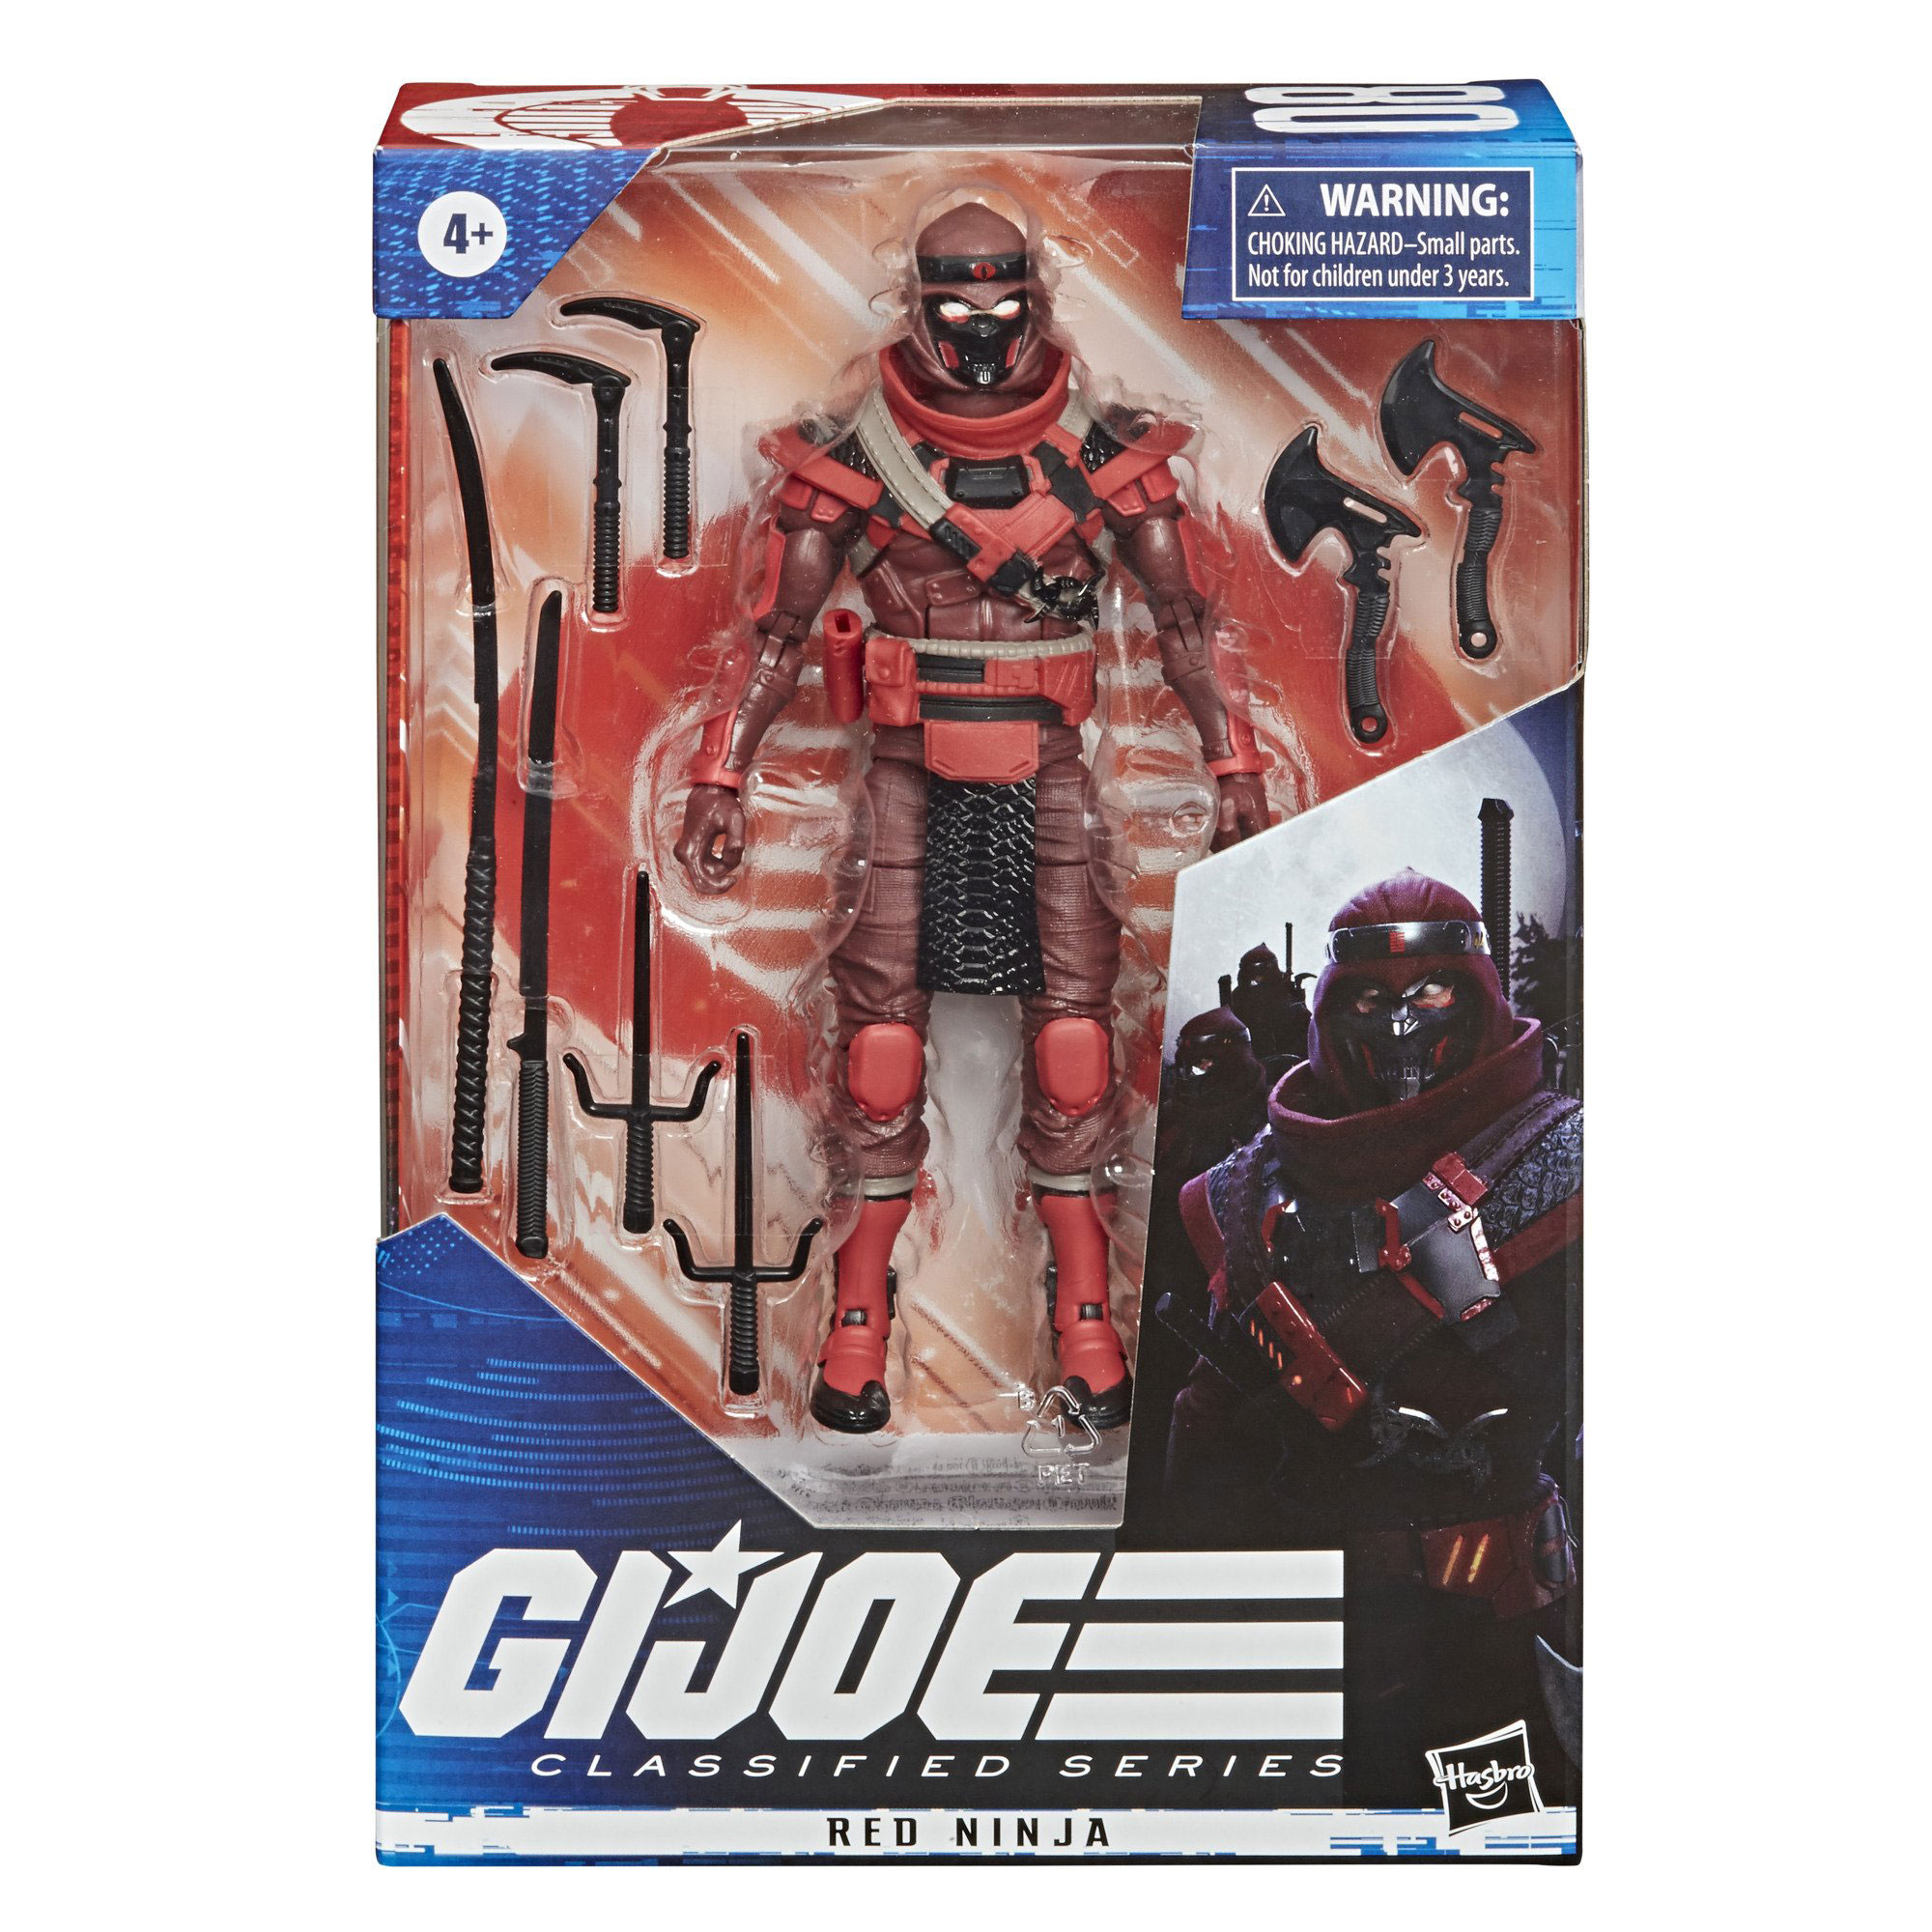 gi-joe-classified-series-red-ninja-action-figure-in-packaging-box